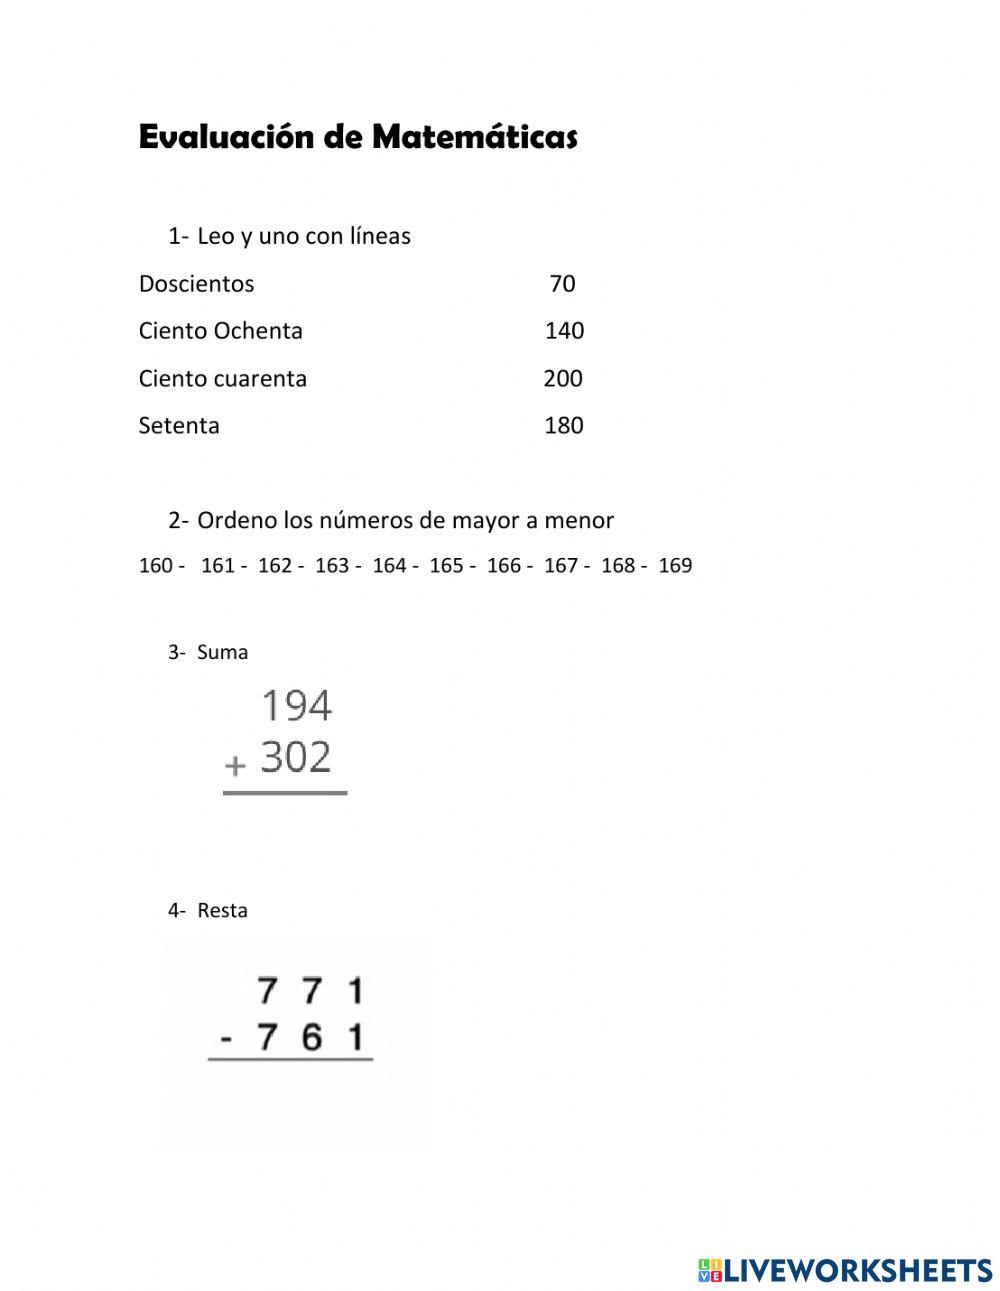 Evaluacion de matematicas 2do